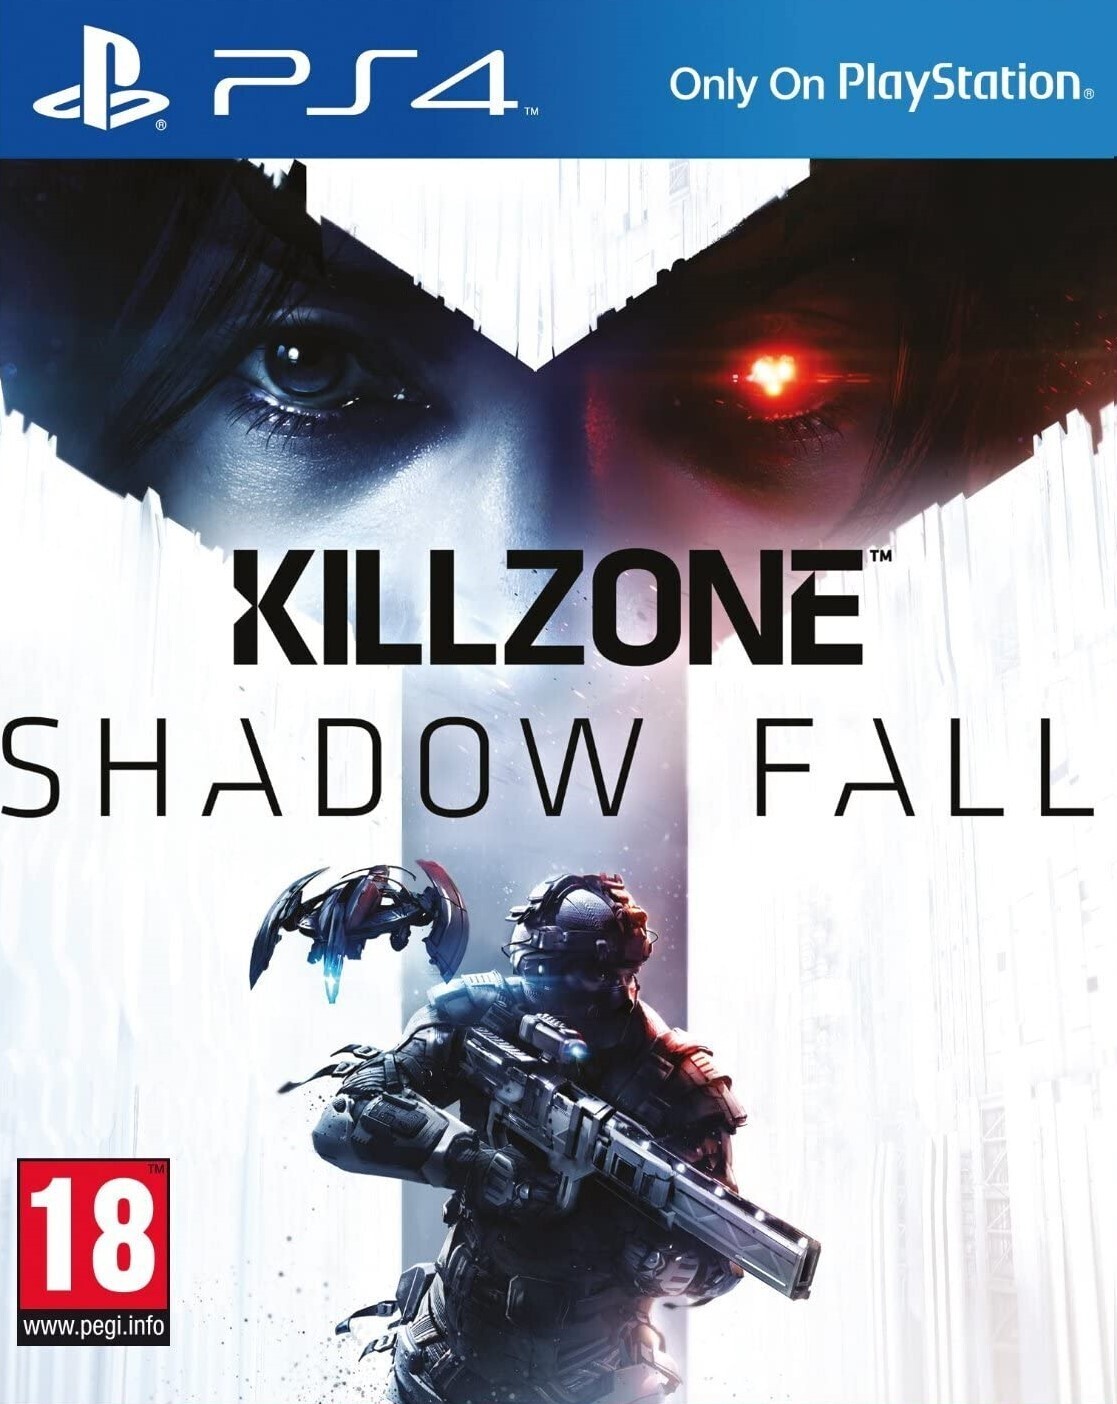 Killzone Shadow Fall |PS4|